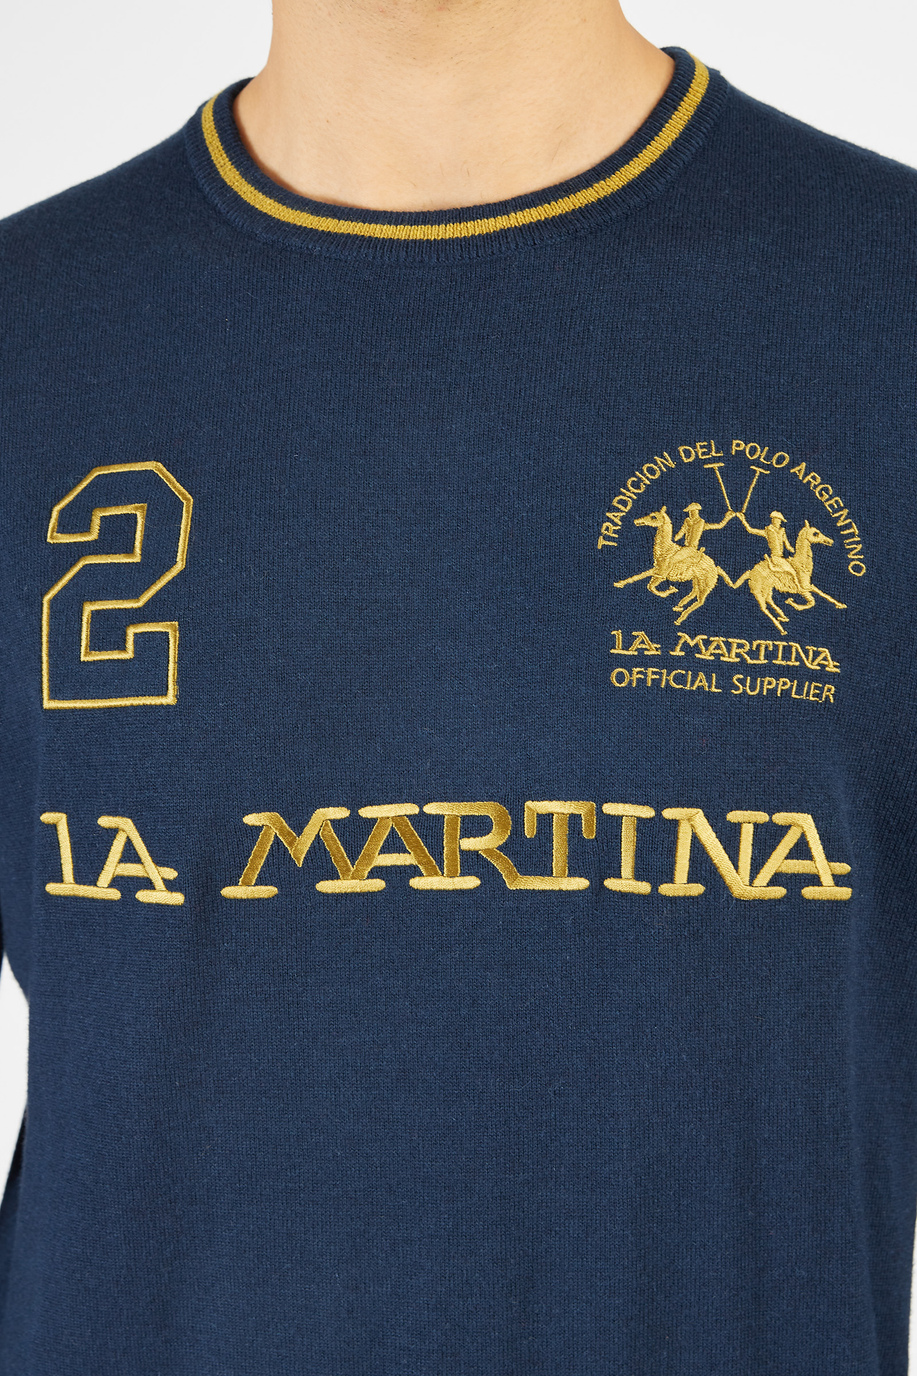 Maglione tricot da uomo in lambscot girocollo regular fit - Novità | La Martina - Official Online Shop